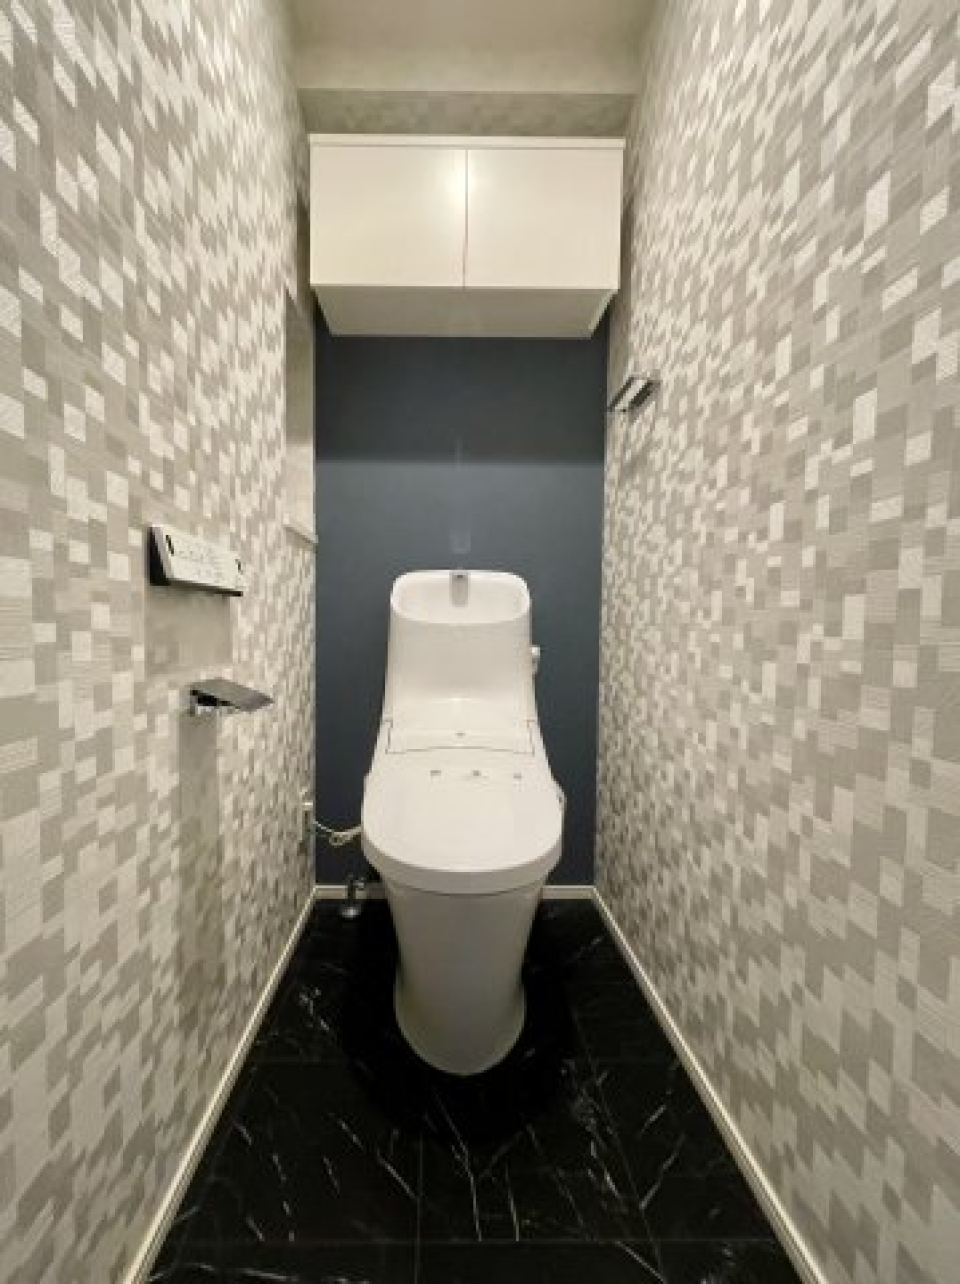 スタイリッシュなトイレ。
壁とゆう壁がおしゃれになってます。